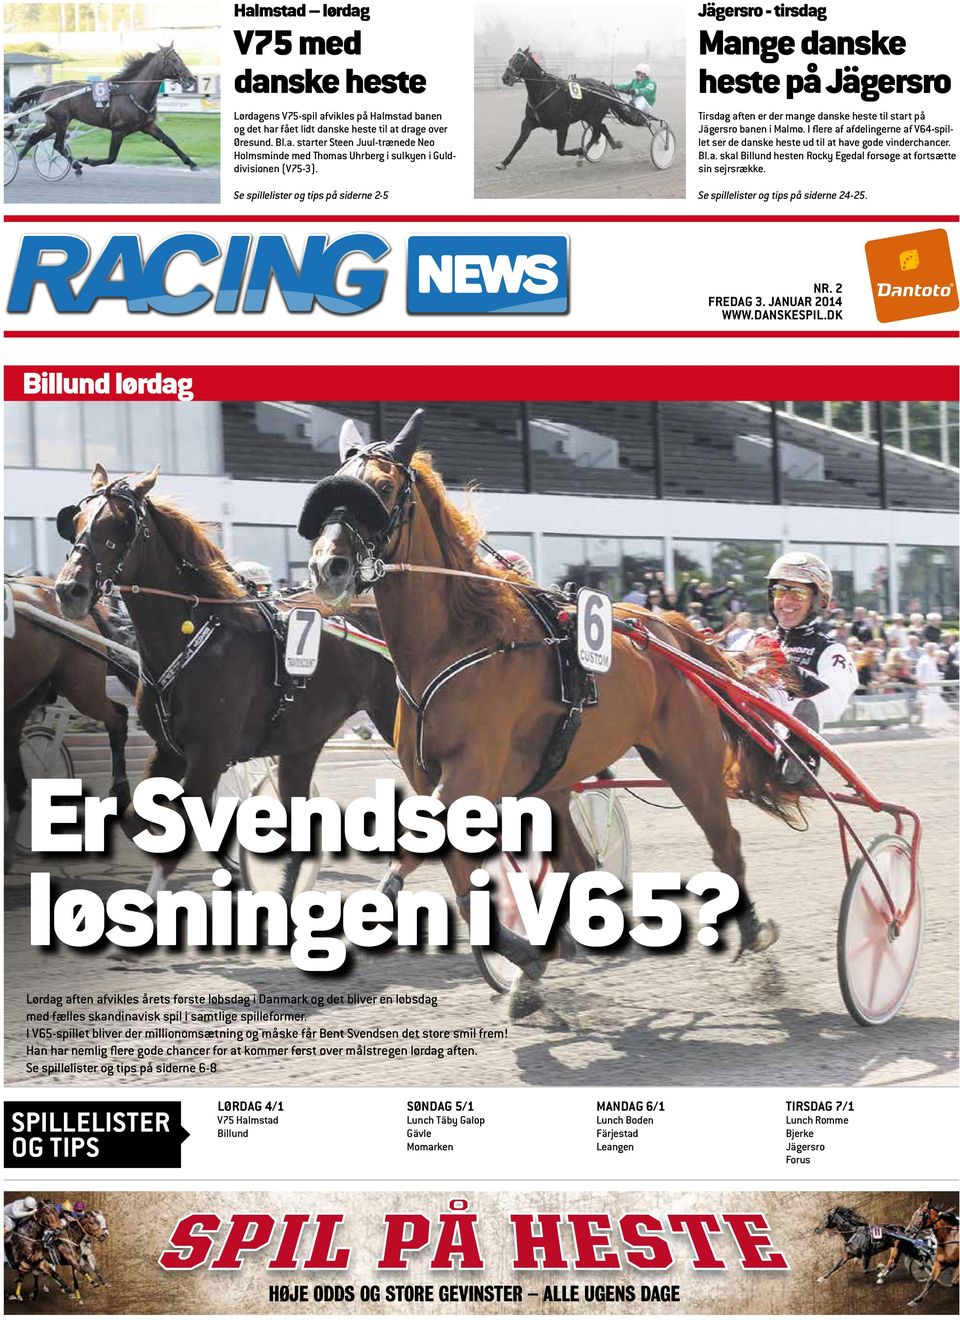 I flere af afdelingerne af V64-spillet ser de danske heste ud til at have gode vinderchancer. Bl.a. skal Billund hesten Rocky Egedal forsøge at fortsætte sin sejrsrække.